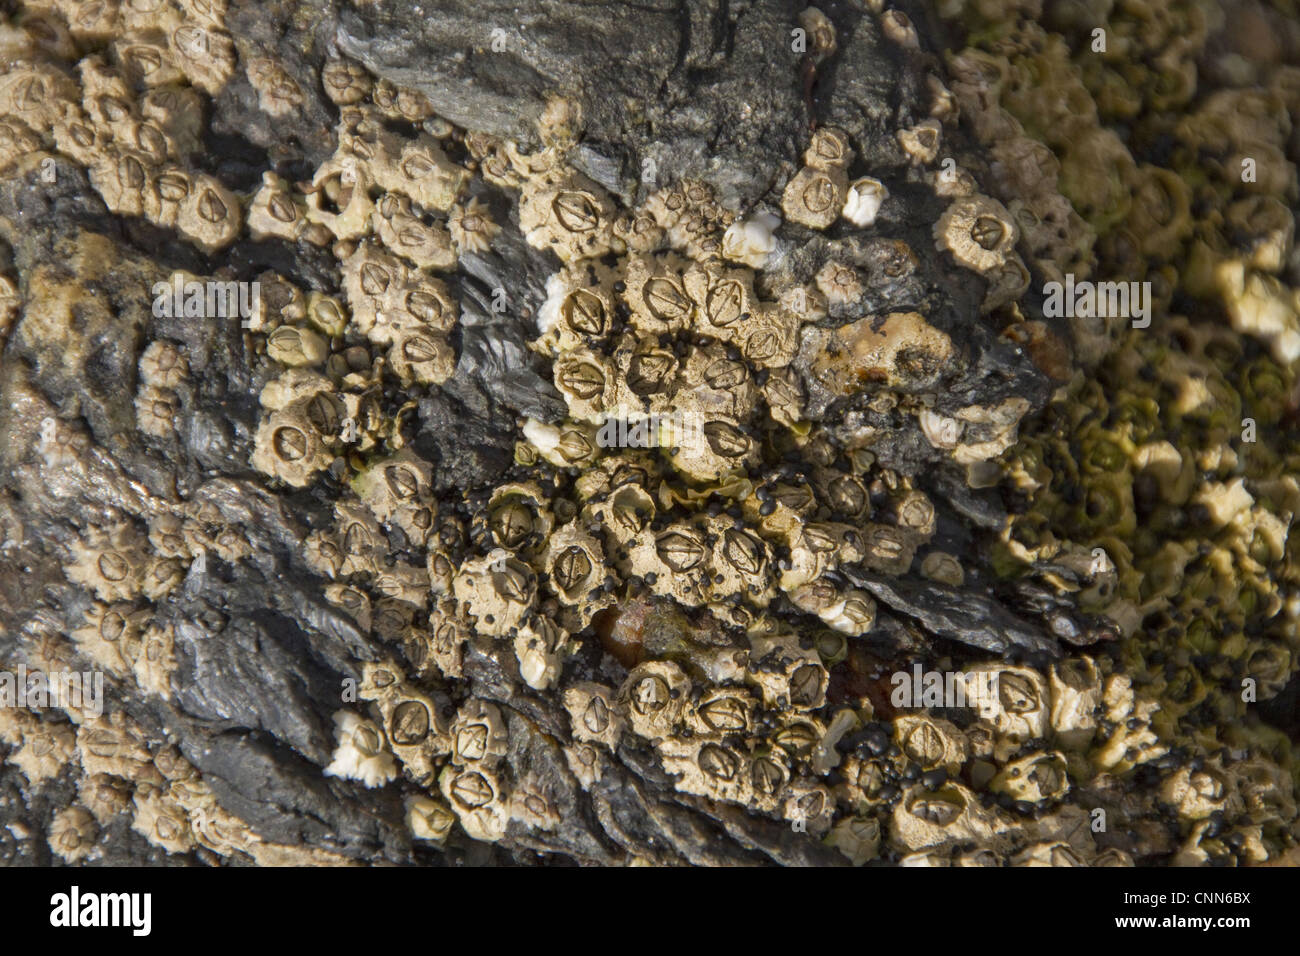 Semibalanus balanoides généralisée commune boreo-espèces arctiques acorn barnacle roches commune d'autres substrats de la zone intertidale Banque D'Images